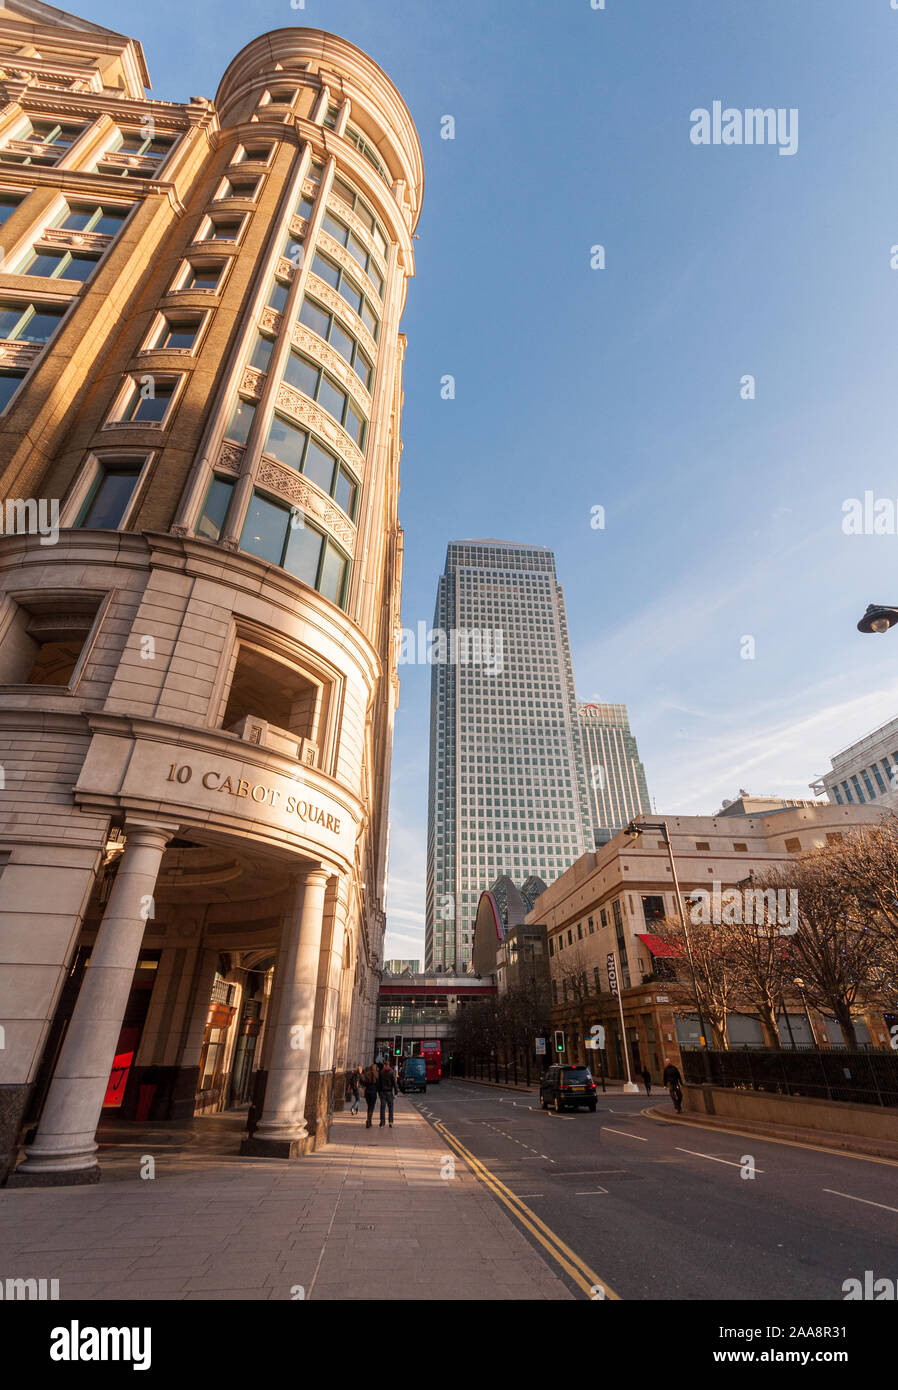 London, England, Regno Unito - 10 dicembre 2011: il sole splende su moderni edifici per uffici in Canary Wharf quartiere degli affari della zona est di Londra. Foto Stock